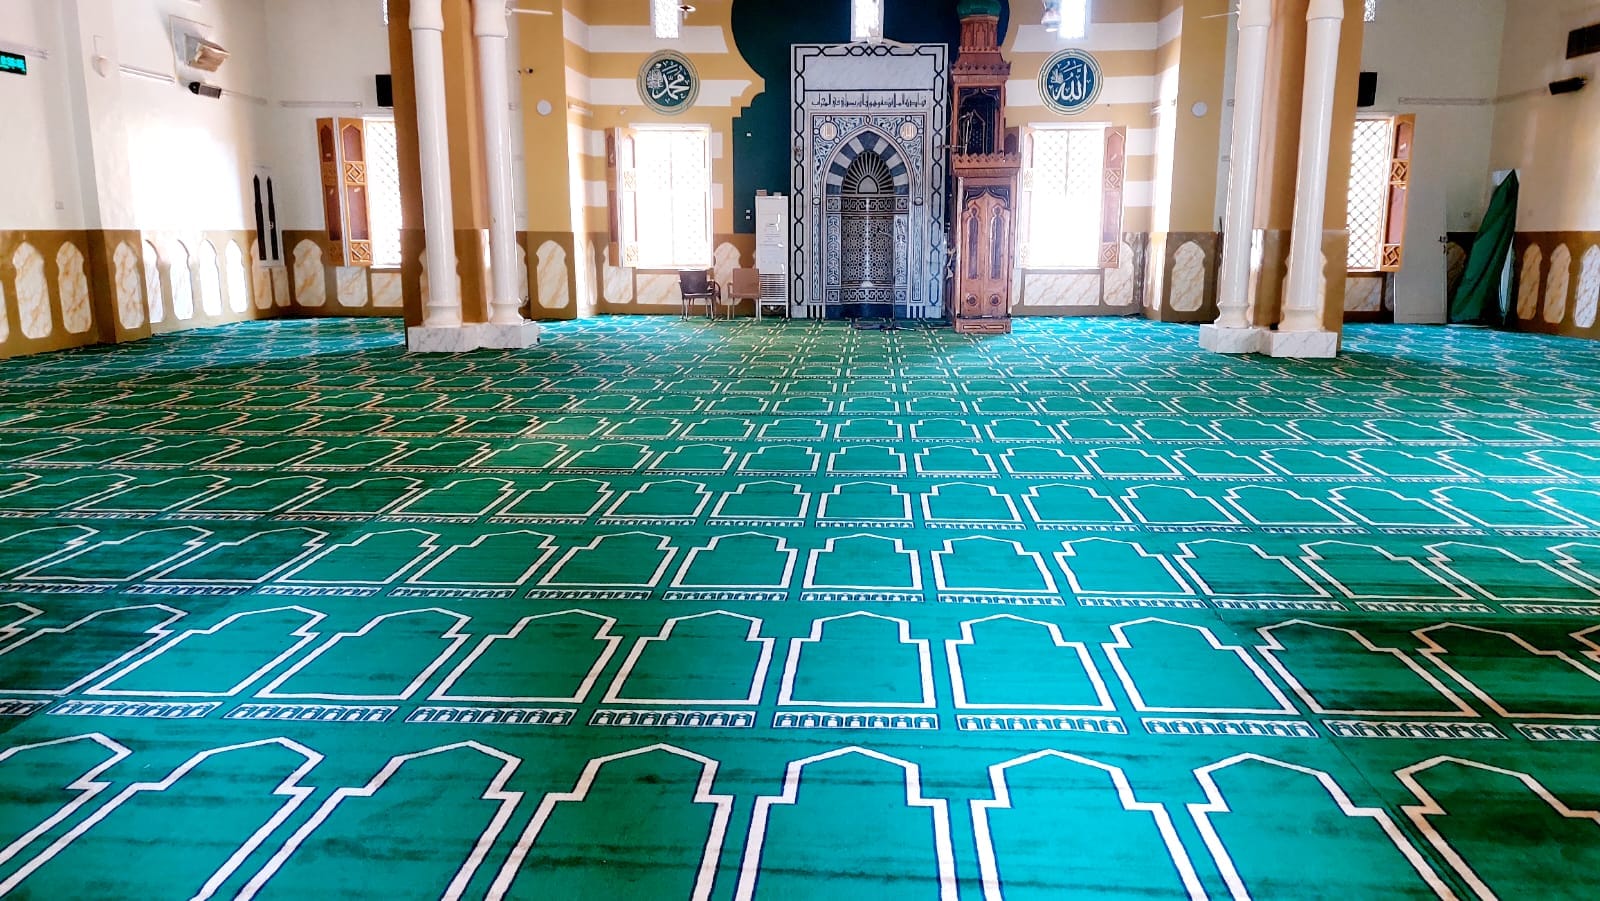 فرش مسجد السيد يوسف بالكرنك بمدينة الاقصر بسجاد المحراب الجديد